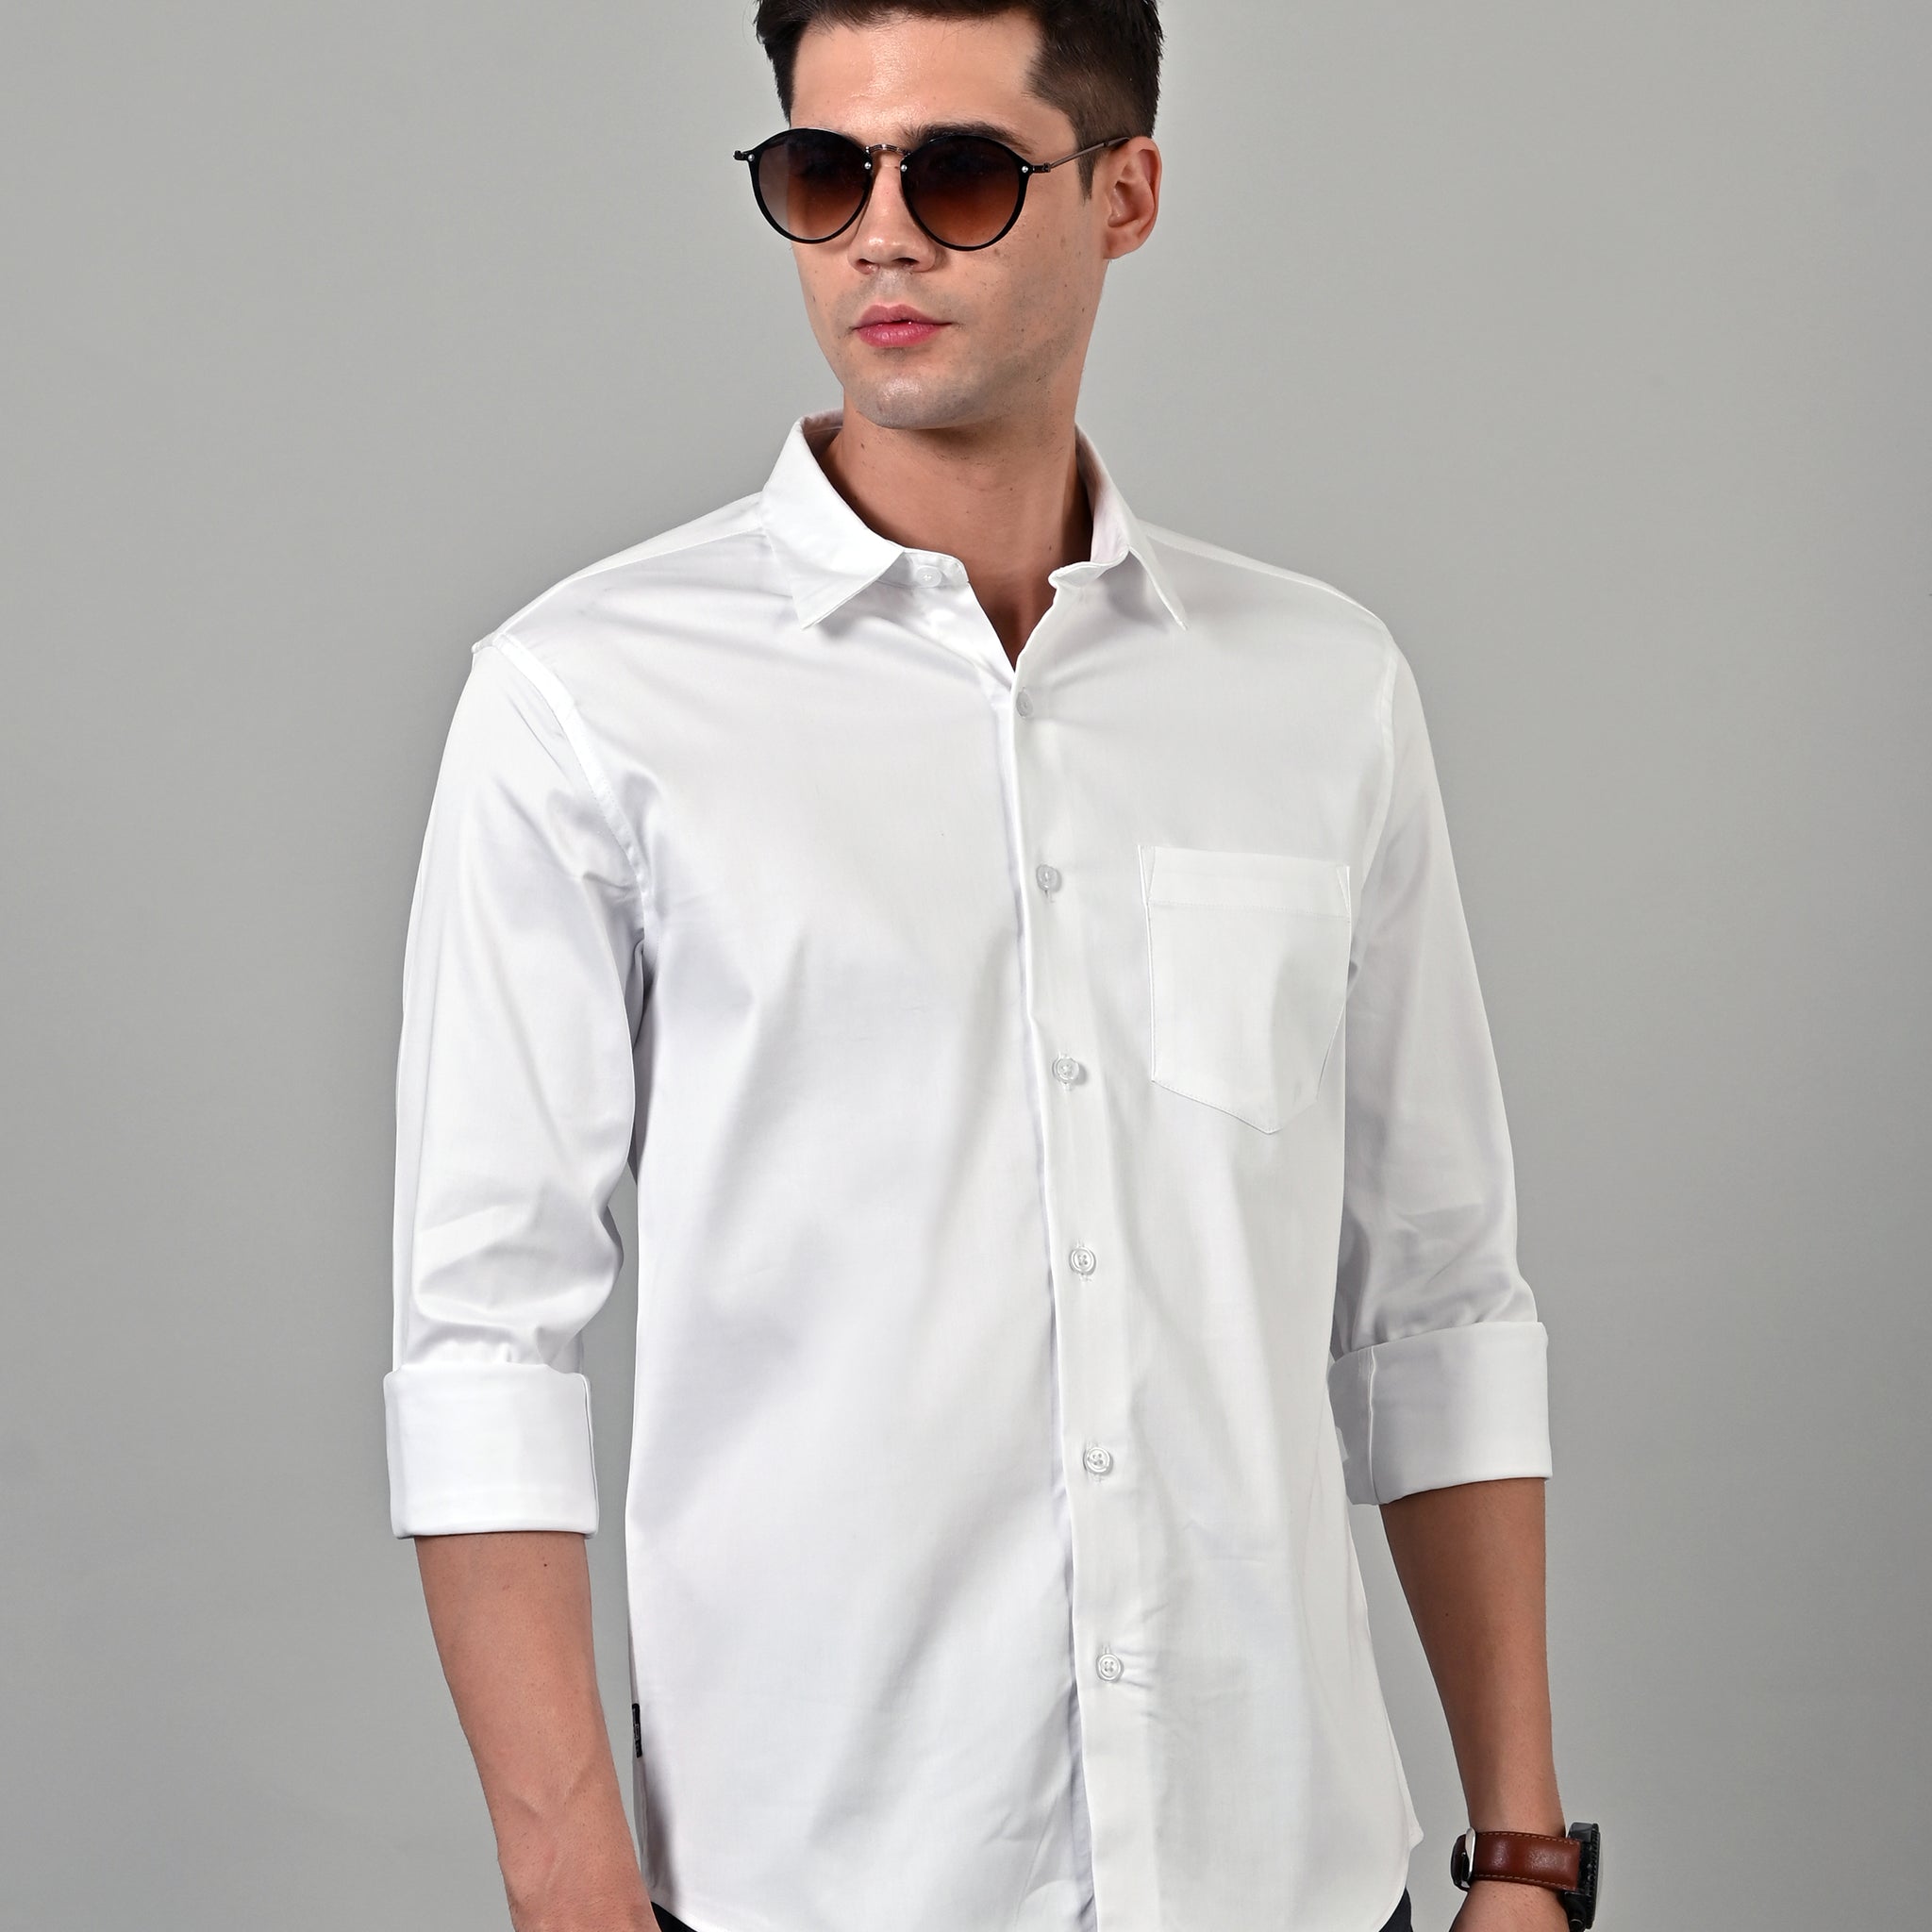 Satin Plain White Shirt